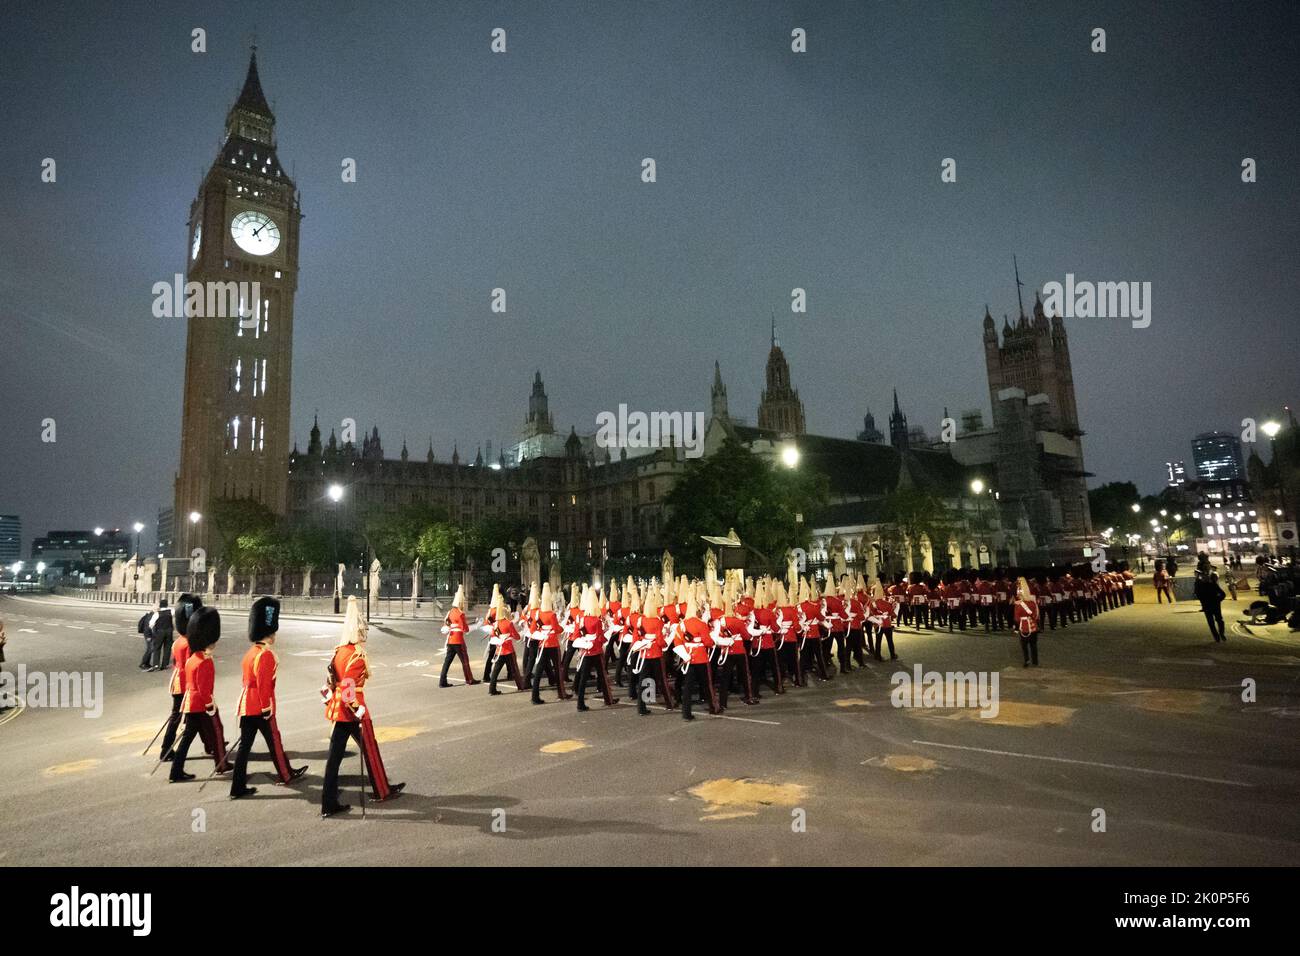 Une répétition tôt le matin pour la procession du cercueil de la reine Elizabeth de Buckingham Palace à Westminster Hall, Londres, où il sera dans l'état jusqu'à ses funérailles lundi. Date de la photo: Mardi 13 septembre 2022. Banque D'Images